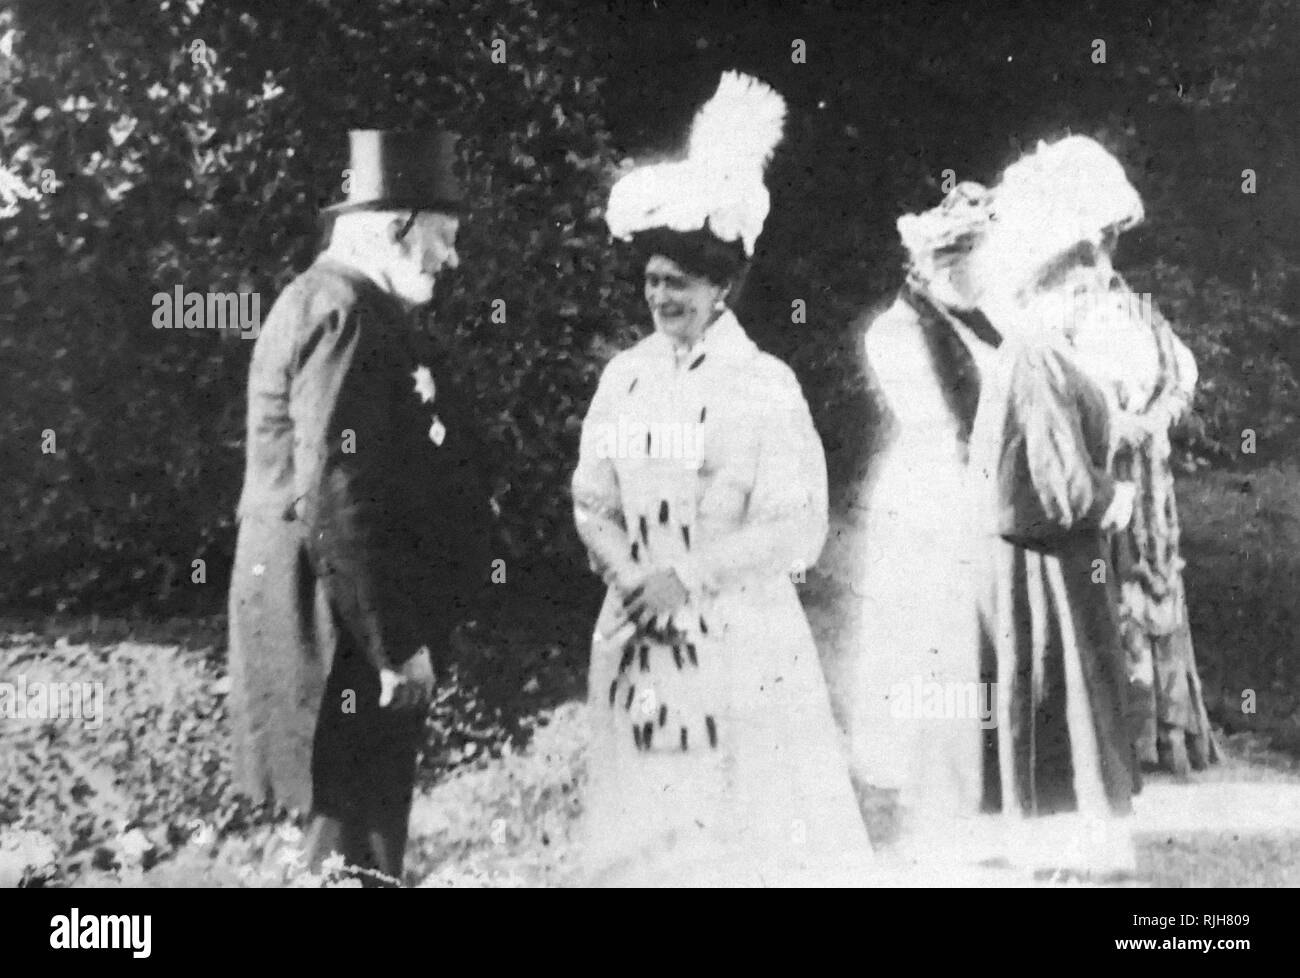 Tsarine de Russie, Alexandra de Russie, des entretiens avec un courtier. Derrière elle est sa fidèle compagne Anna Vyrubova. Alexandra Feodorovna (1872 - 17 juillet 1918) a été l'impératrice de Russie en tant qu'épouse de Nicolas II, le dernier souverain de l'Empire russe, à partir de leur mariage le 26 novembre 1894 jusqu'à son abdication forcée le 15 mars 1917 Banque D'Images